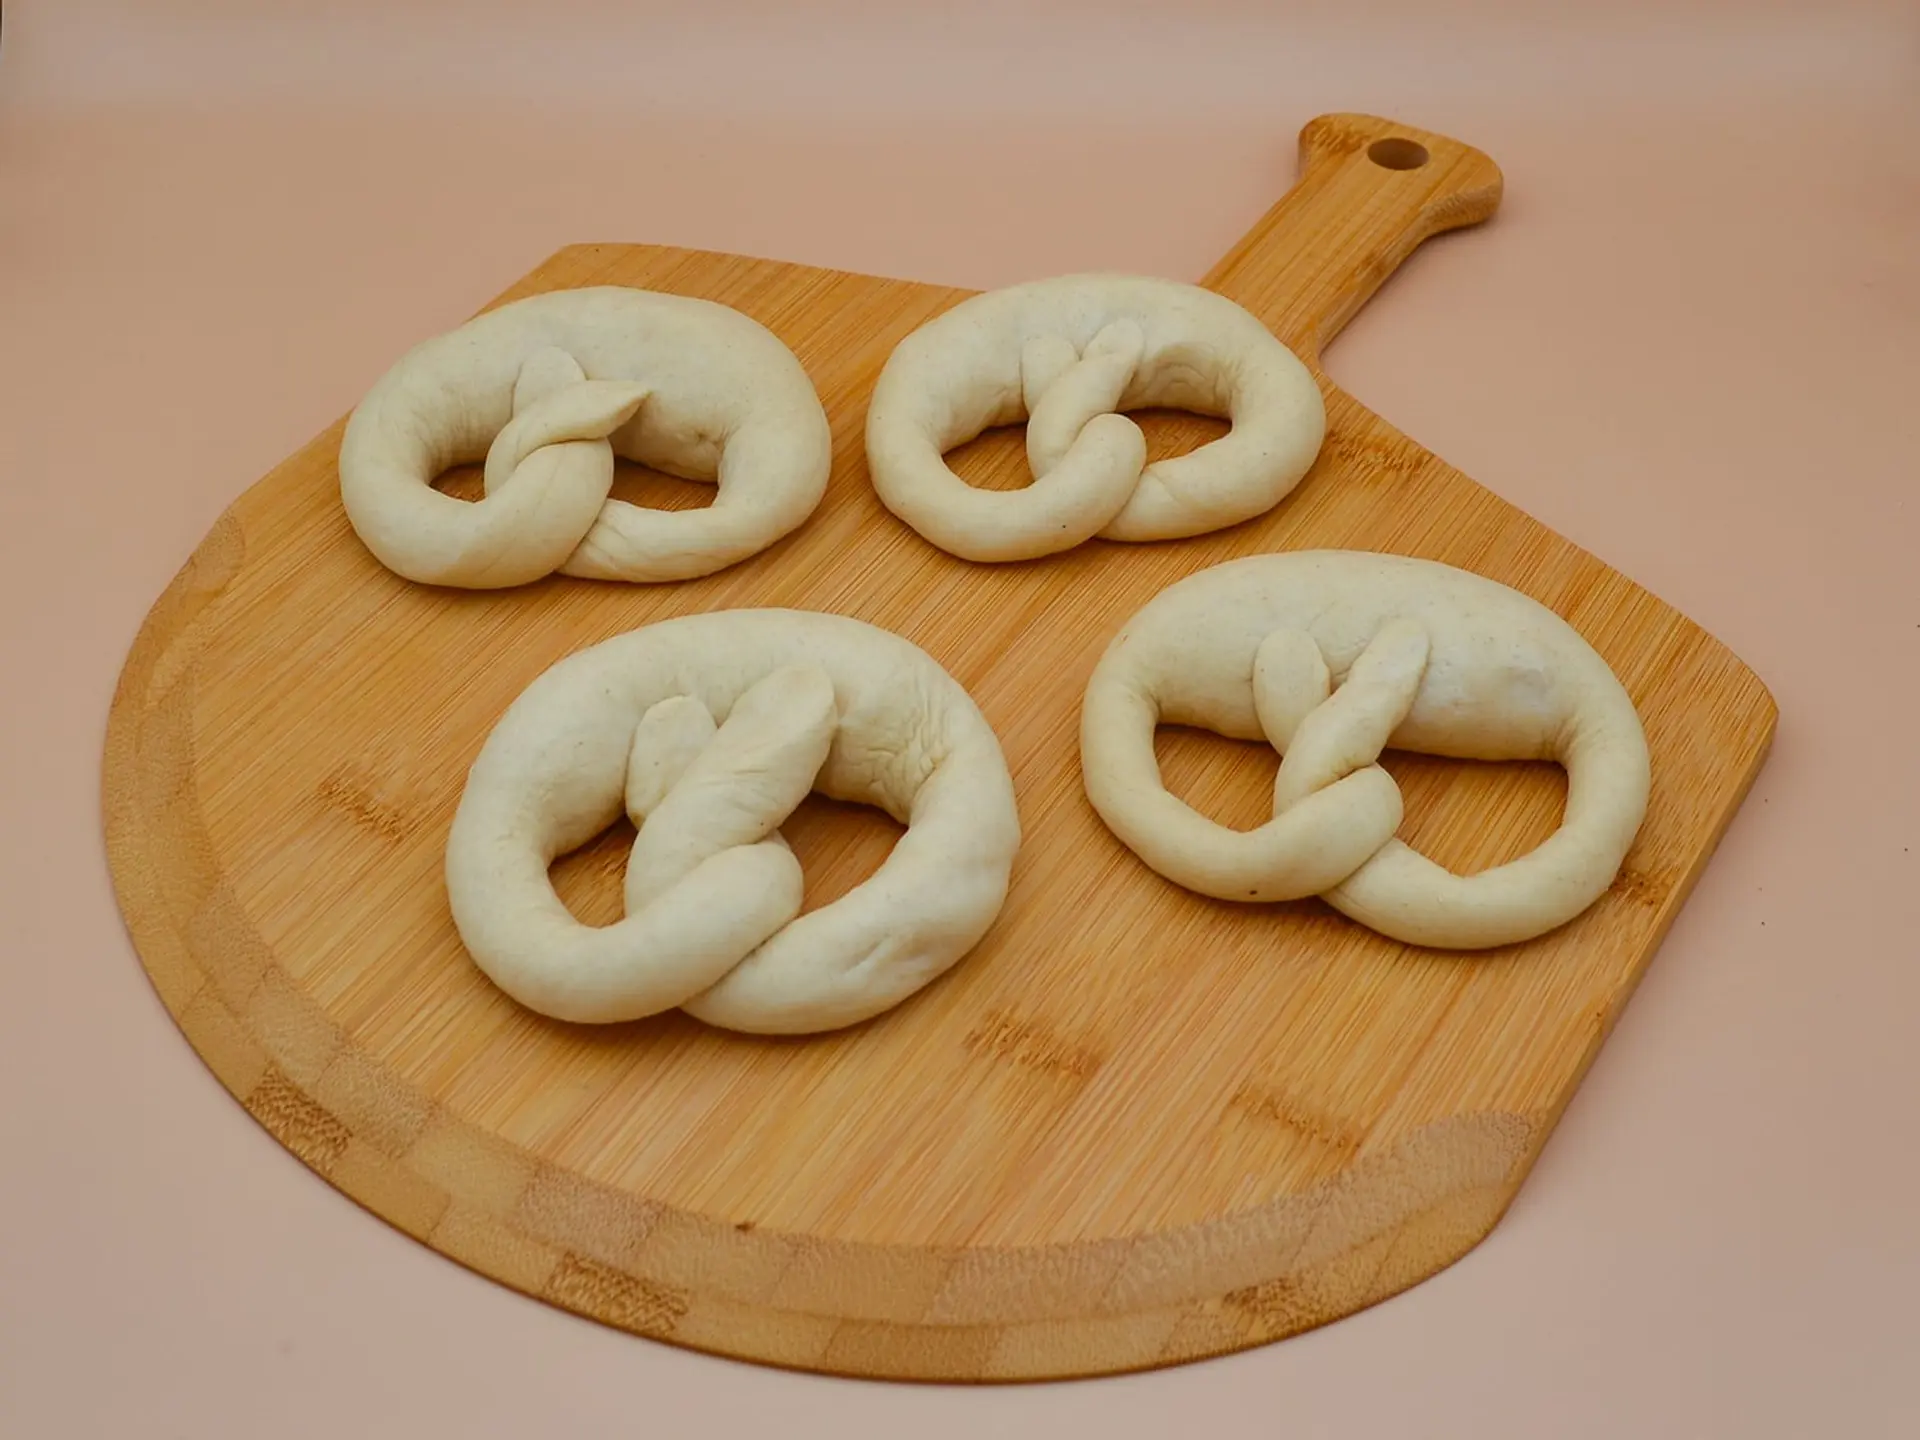 Pretzel Bread shaped